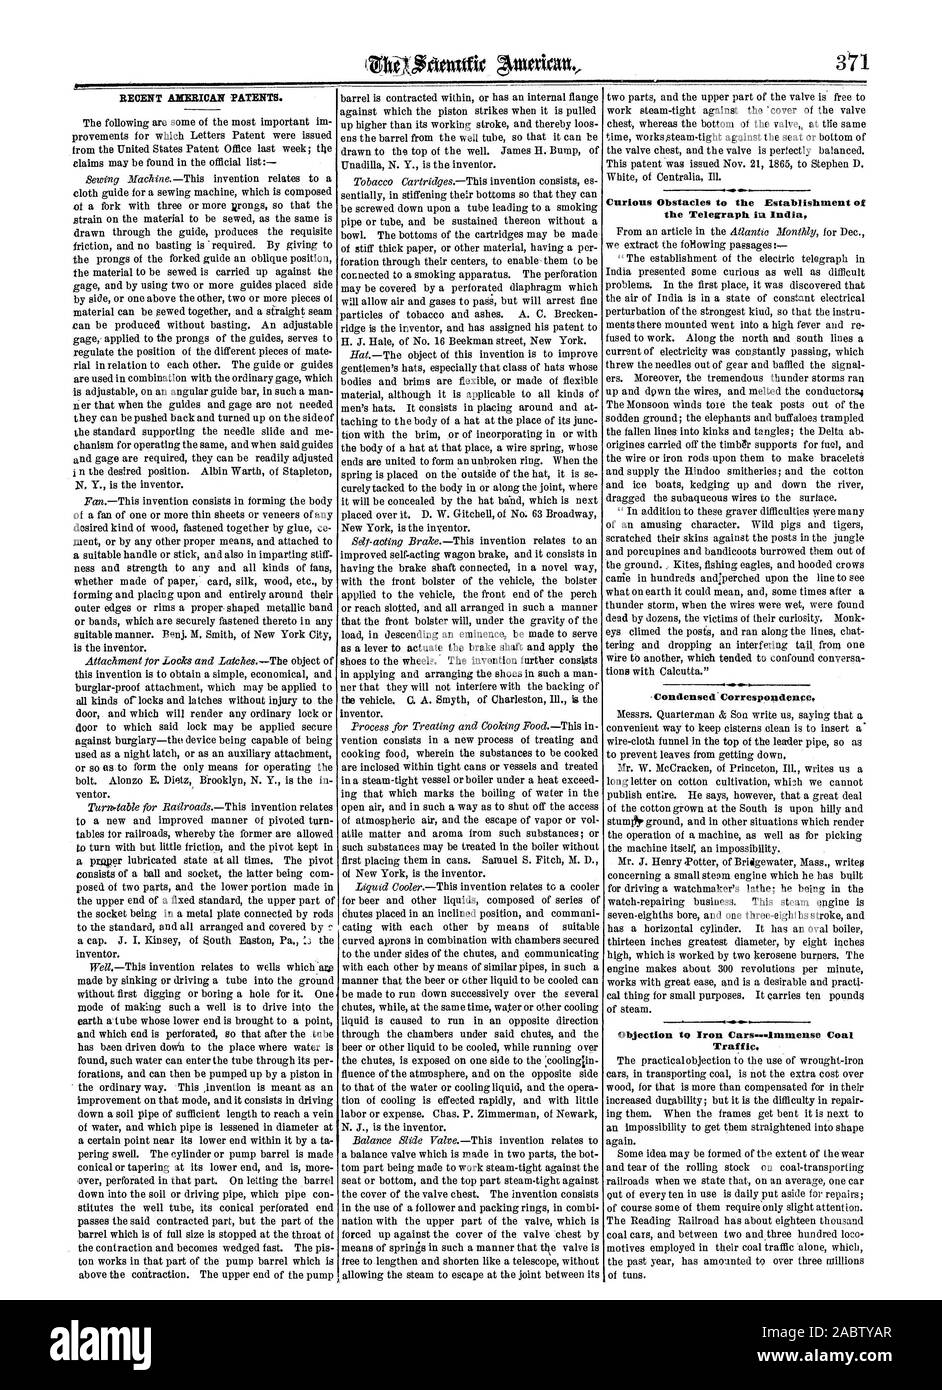 Recenti brevetti AIIENICAN. Curioso gli ostacoli che si frappongono alla realizzazione del telegrafo int India condensato il traffico di corrispondenza, Scientific American, 1865-12-09 Foto Stock